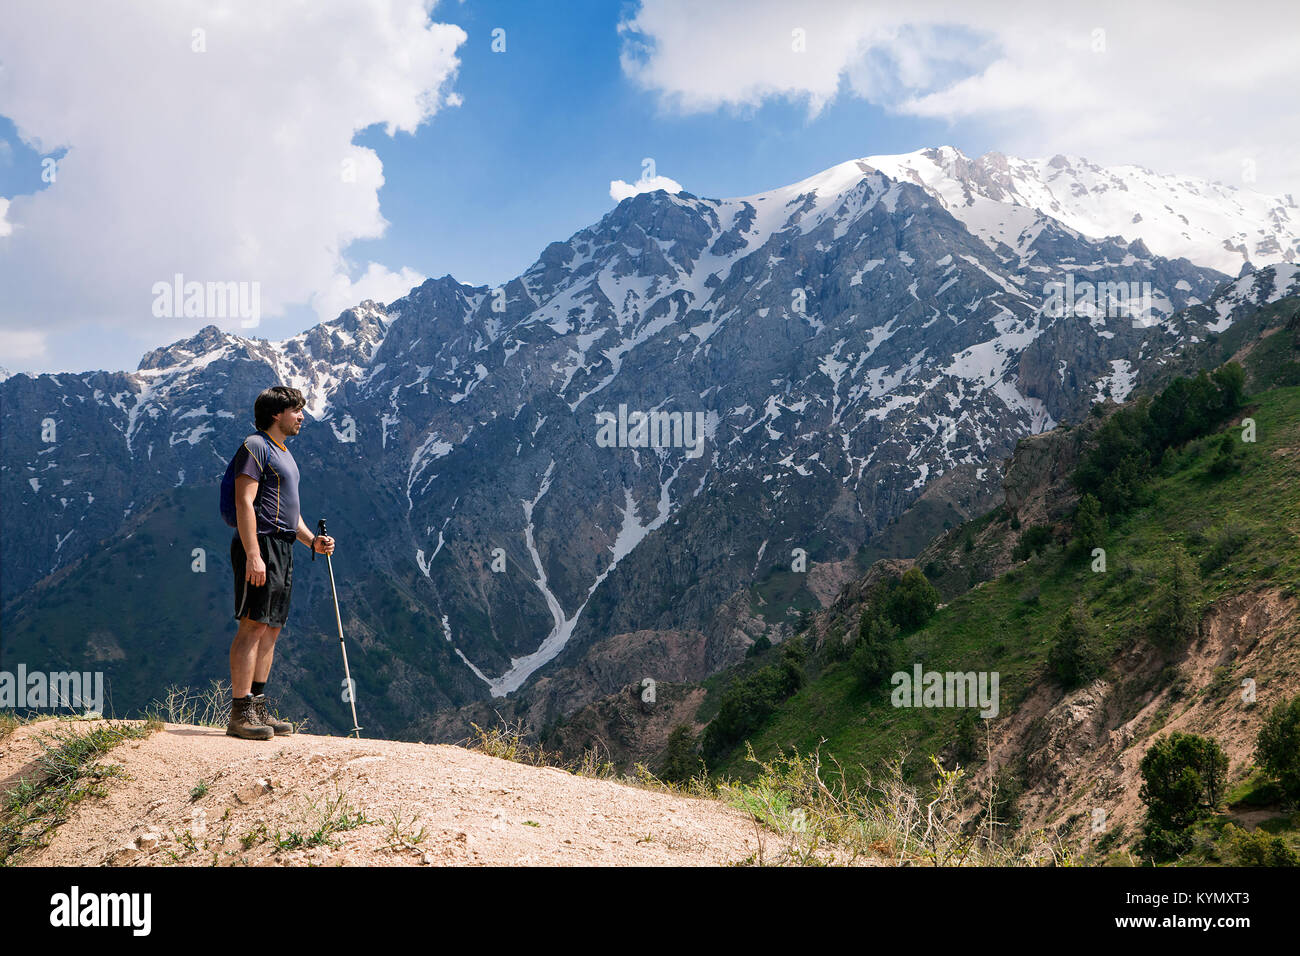 Junge Touristen in die Berge mit einem Walking Stock Stockfoto